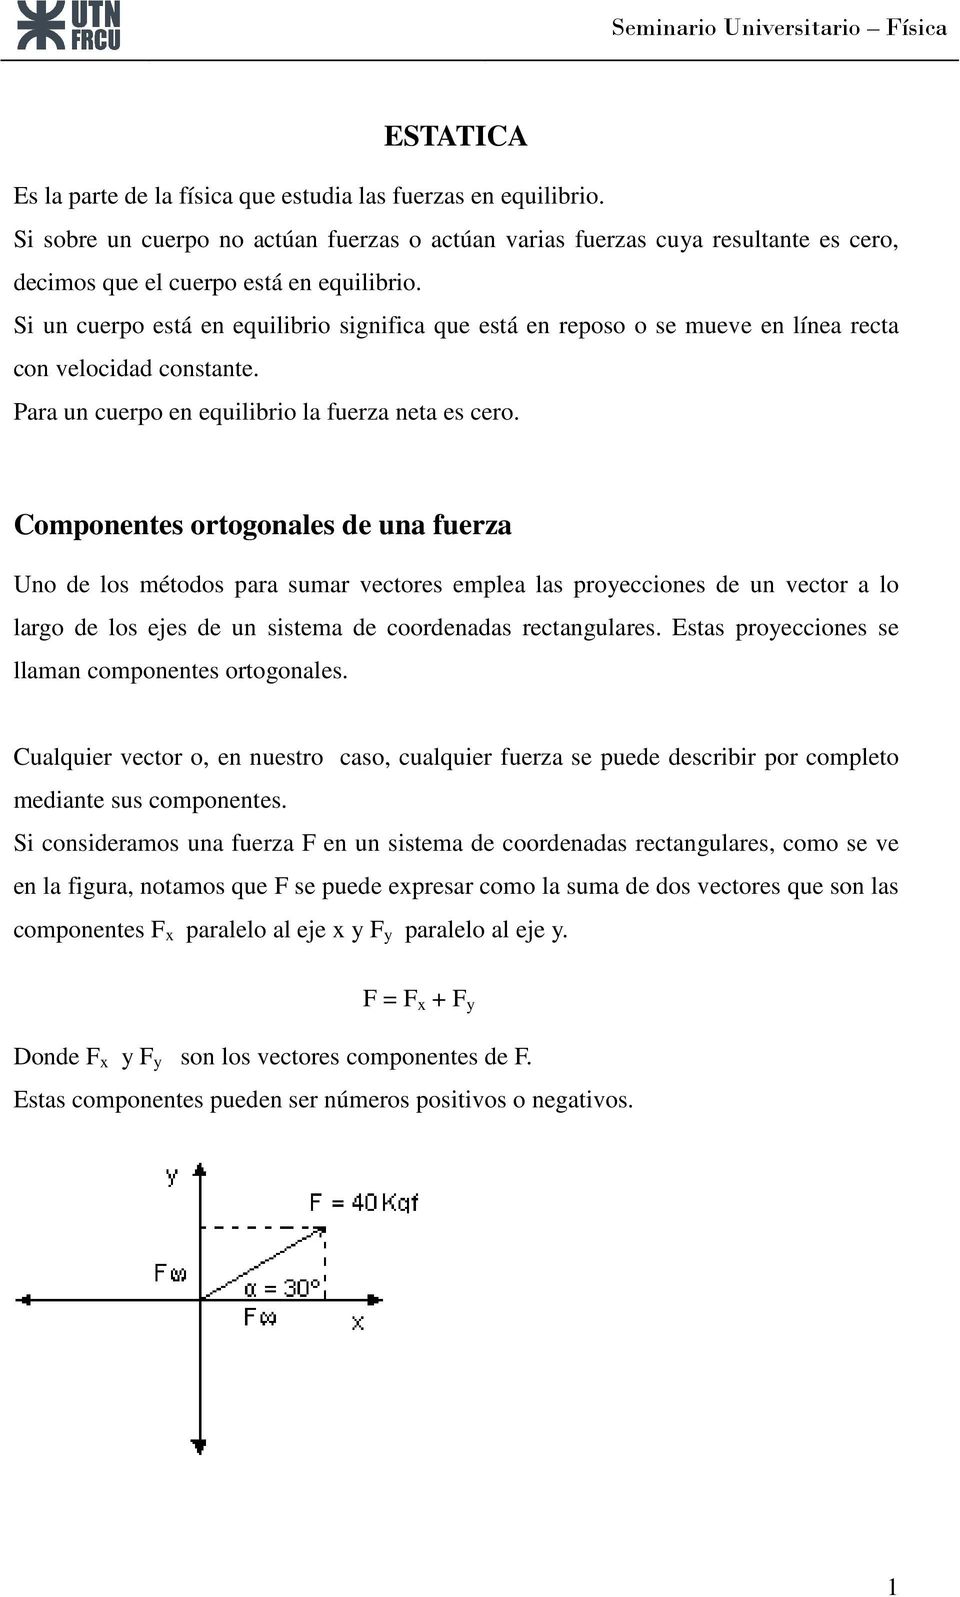 Componentes ortogonales de una fuerza Uno de los métodos para sumar vectores emplea las proyecciones de un vector a lo largo de los ejes de un sistema de coordenadas rectangulares.